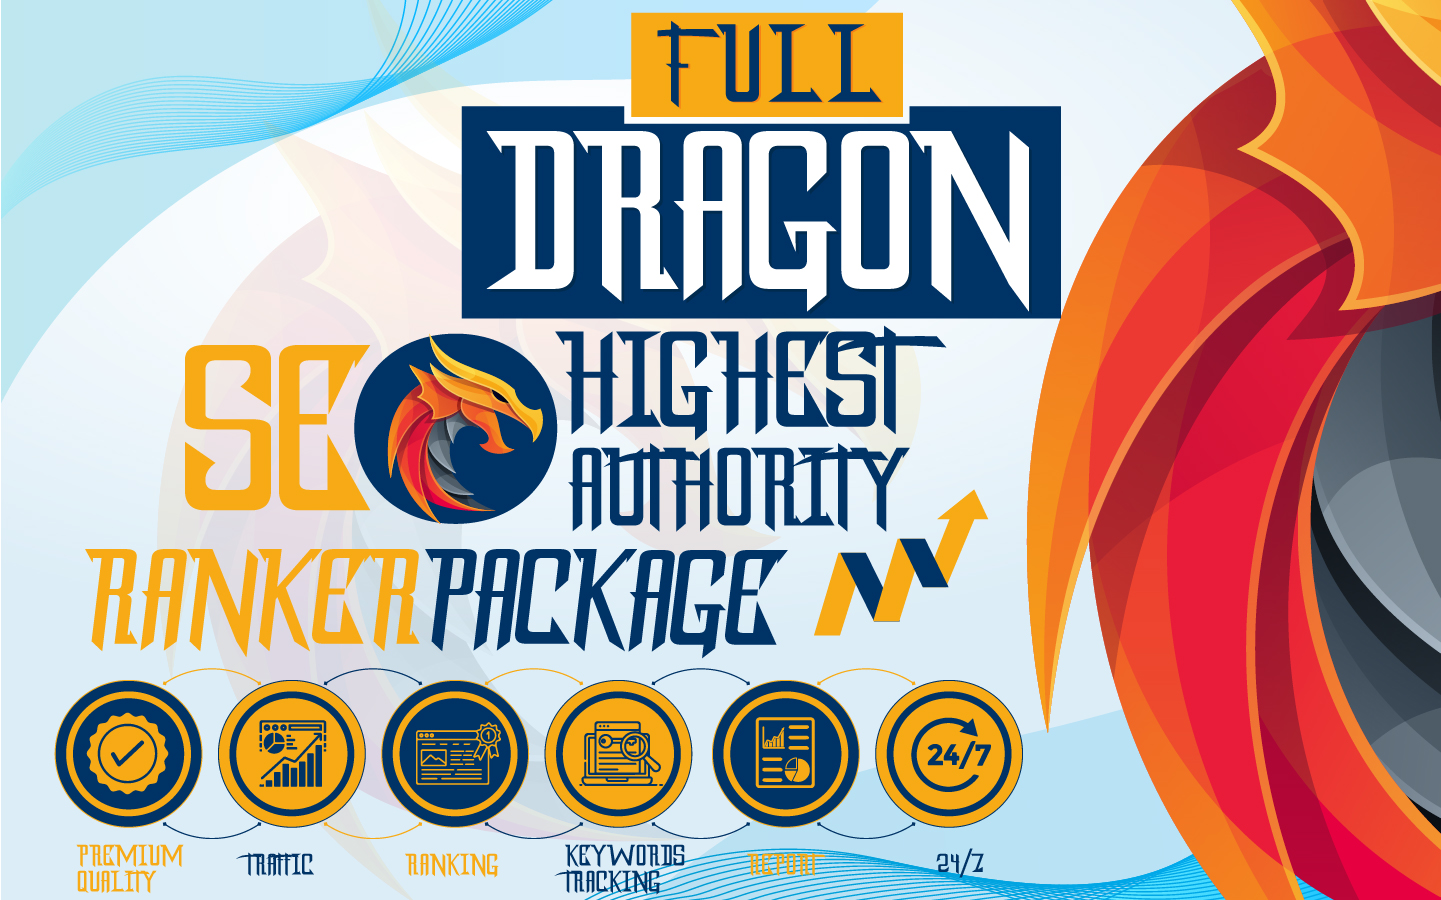 Full Dragon Seo Highest Authority Ranker Package